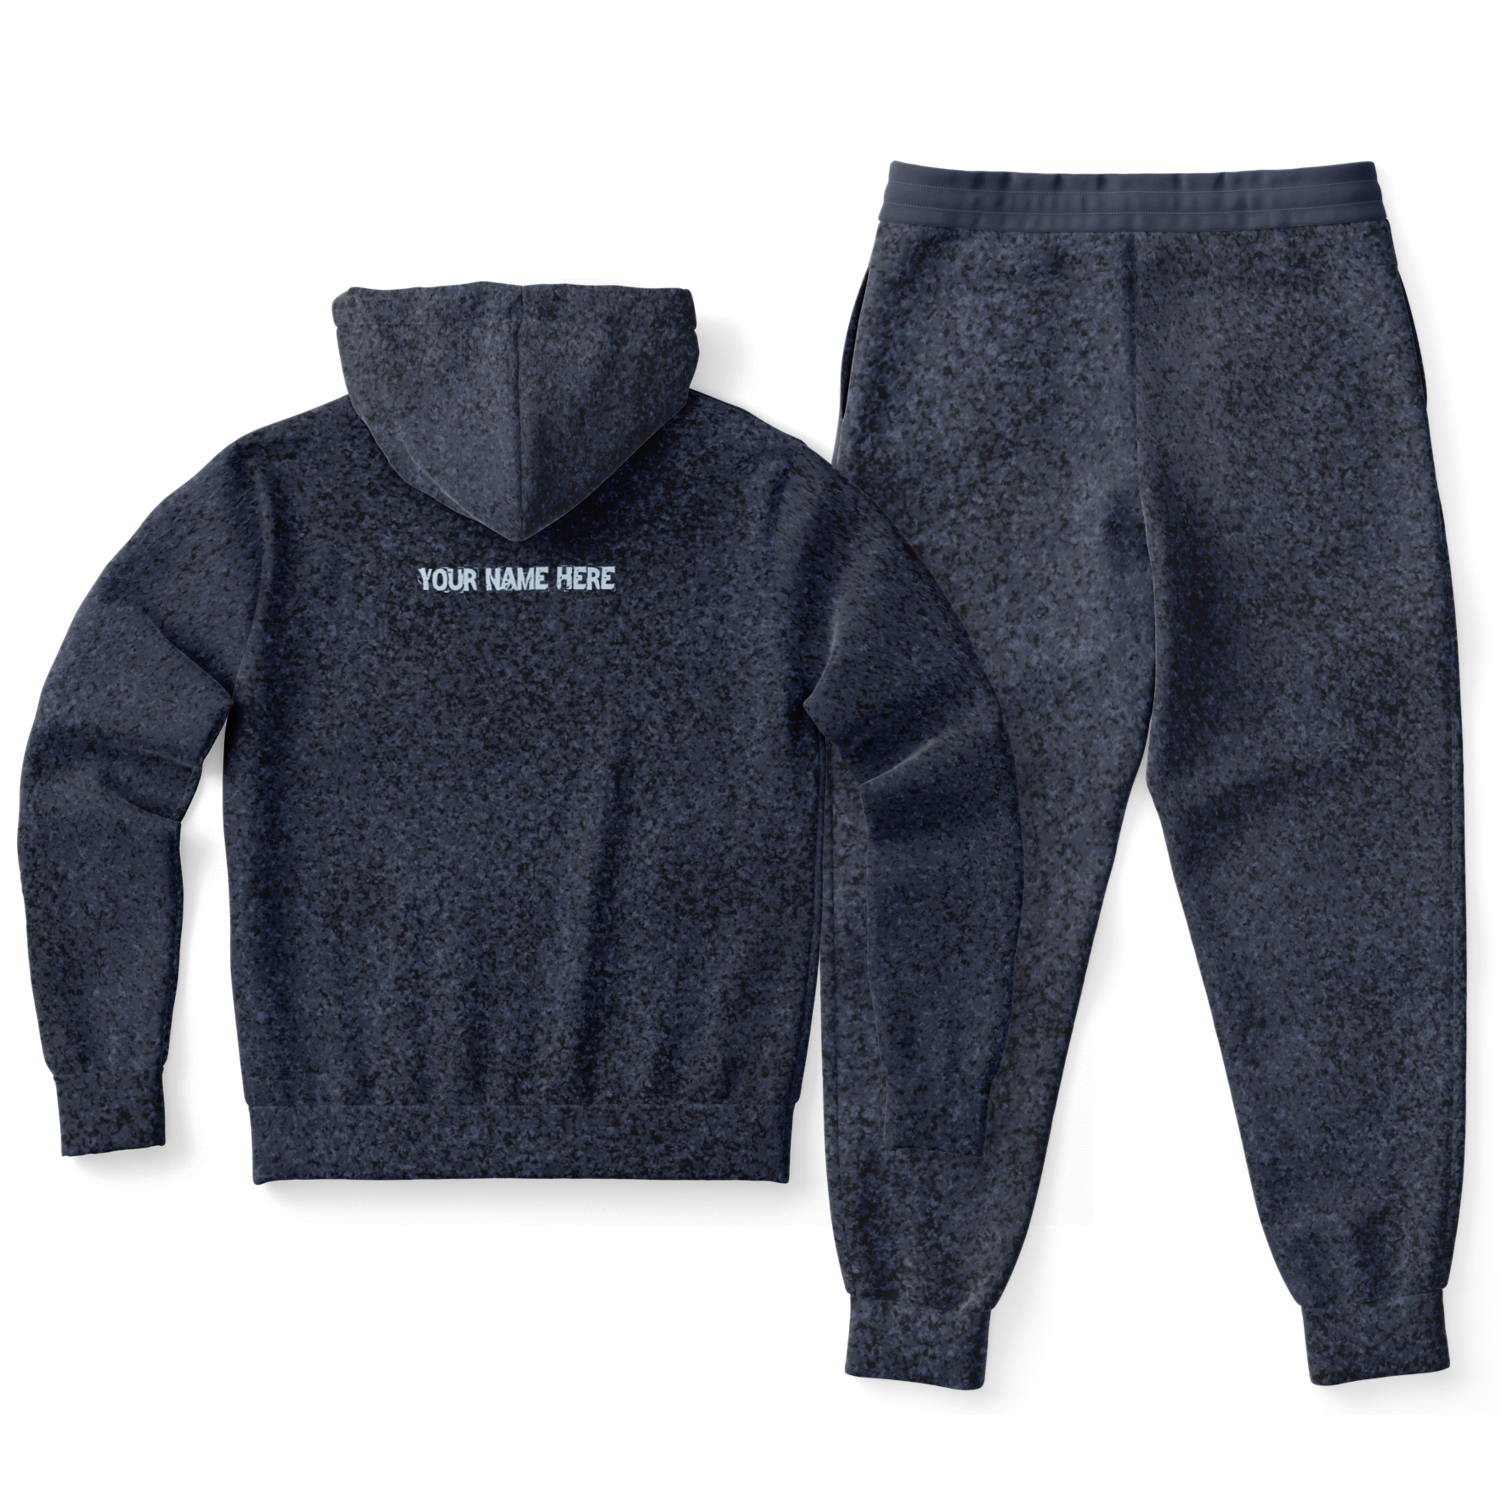 Jefferson Tough - Blue Dust Premium All Over Print Sweat Suit